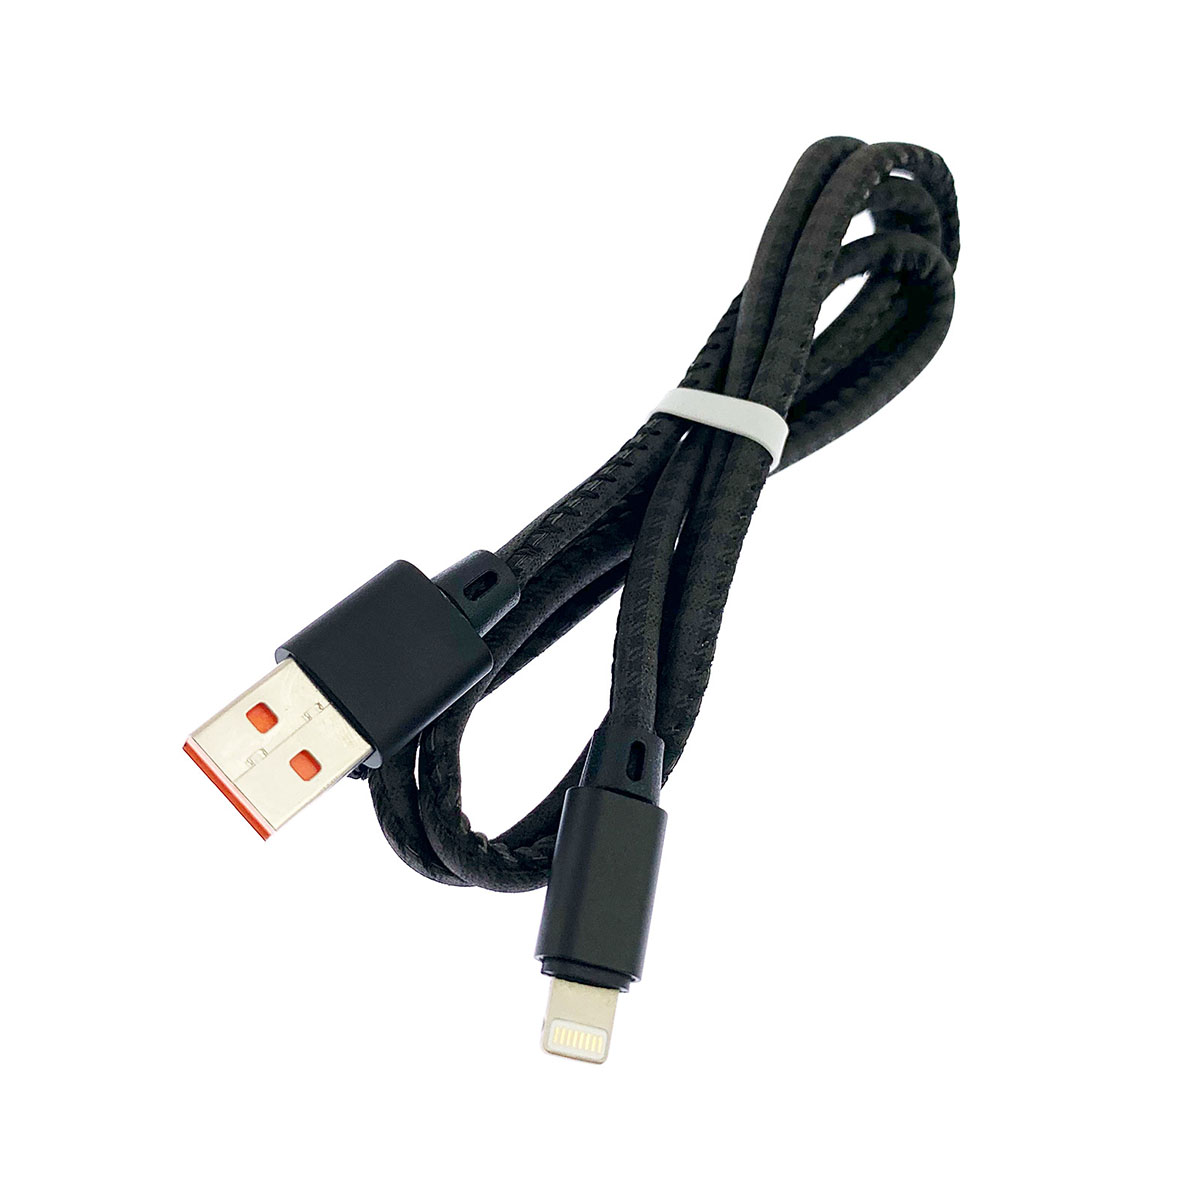 USB Дата кабель A88 для заряда и синхронизации, тип APPLE Lightning 8-pin, в армированной под кожу оболочке, длина 1 метр, цвет черный.